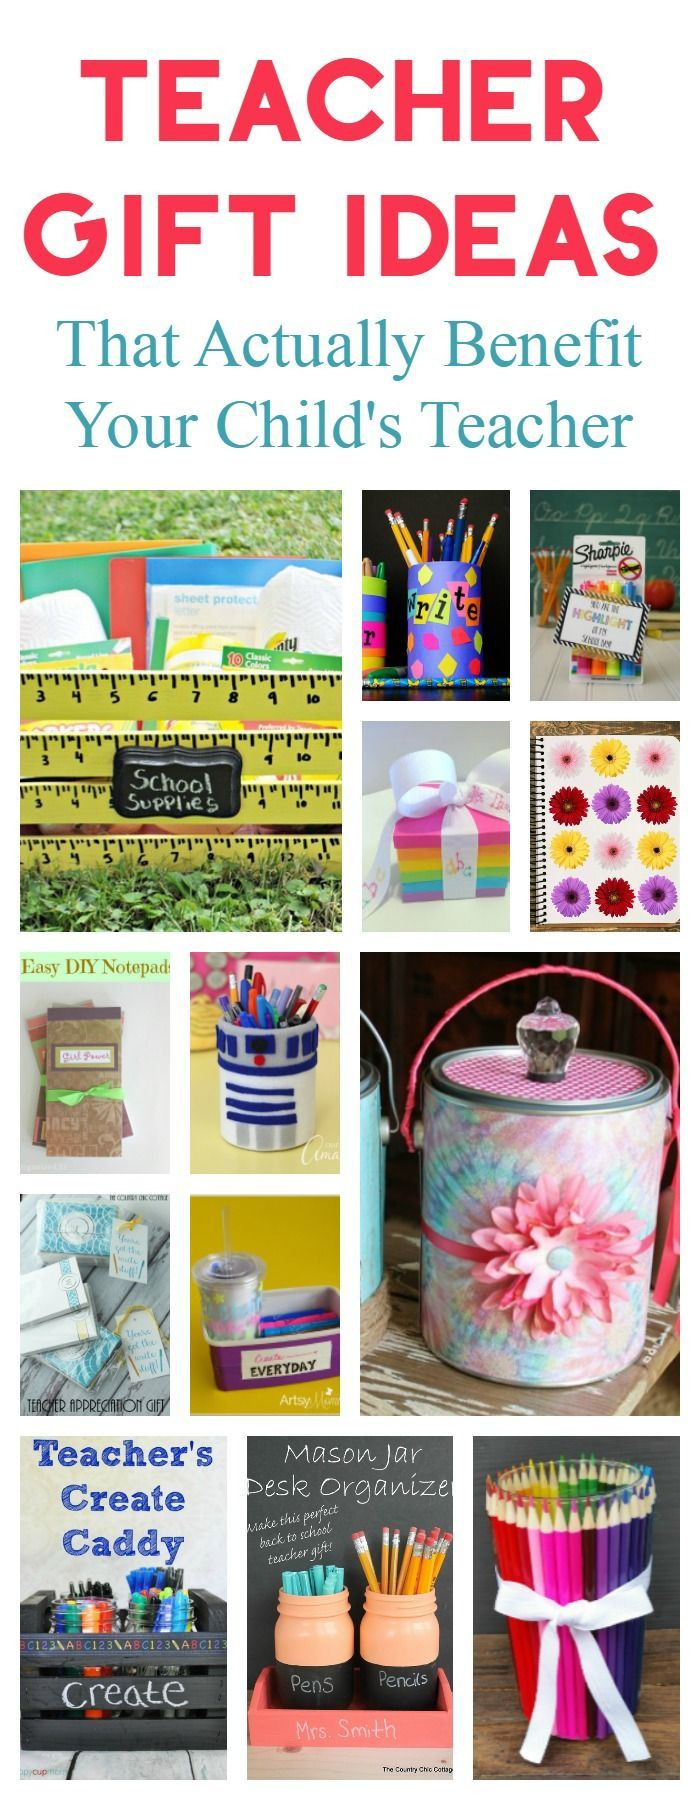 Best ideas about New Teacher Gift Ideas
. Save or Pin Best 20 New Teacher Gifts ideas on Pinterest Now.